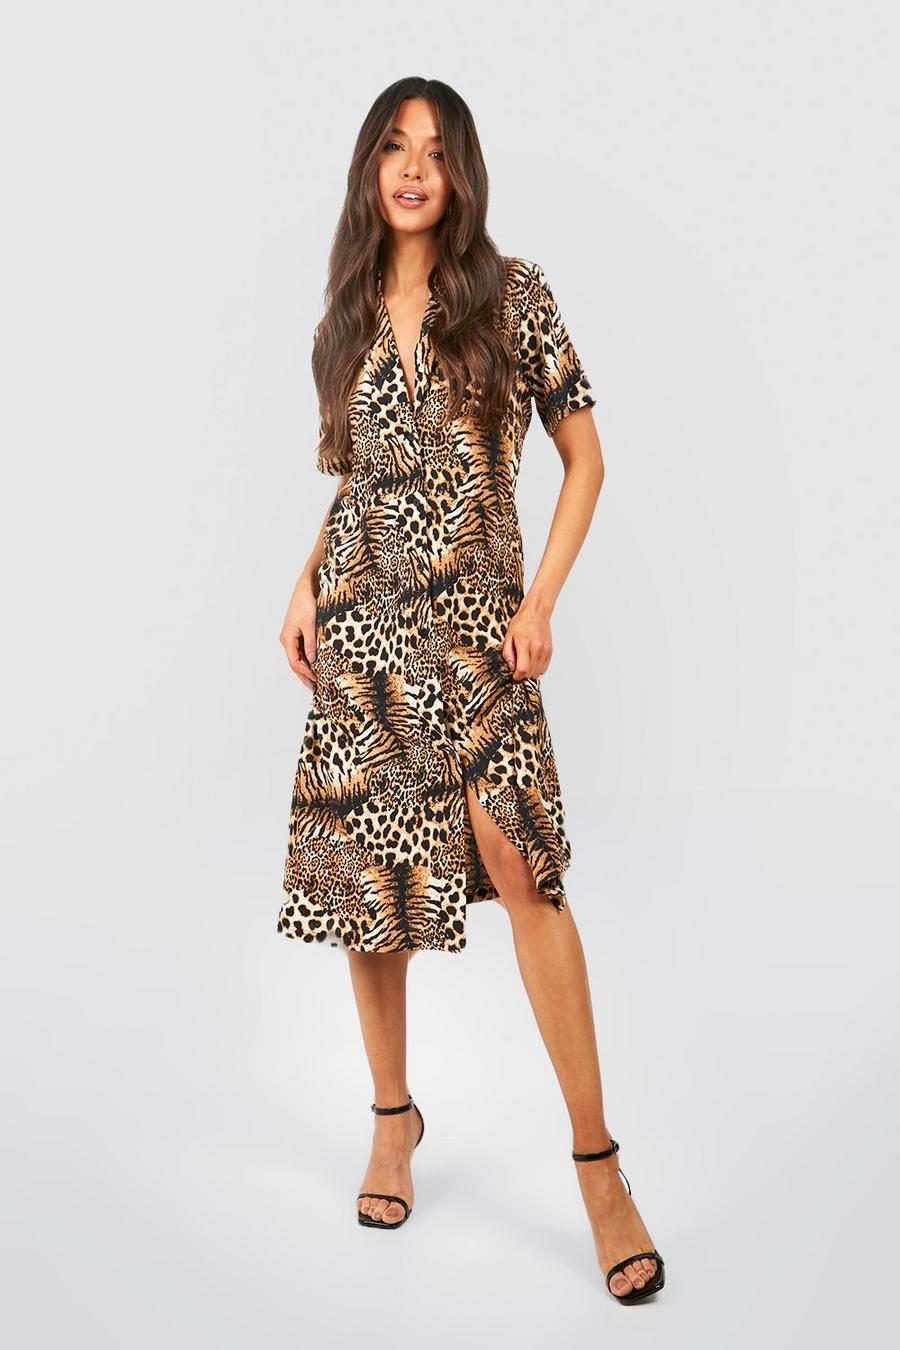 Luipaard multi Midi-jurk in de stijl van een shirt met een mix van tijger- en luipaardprint